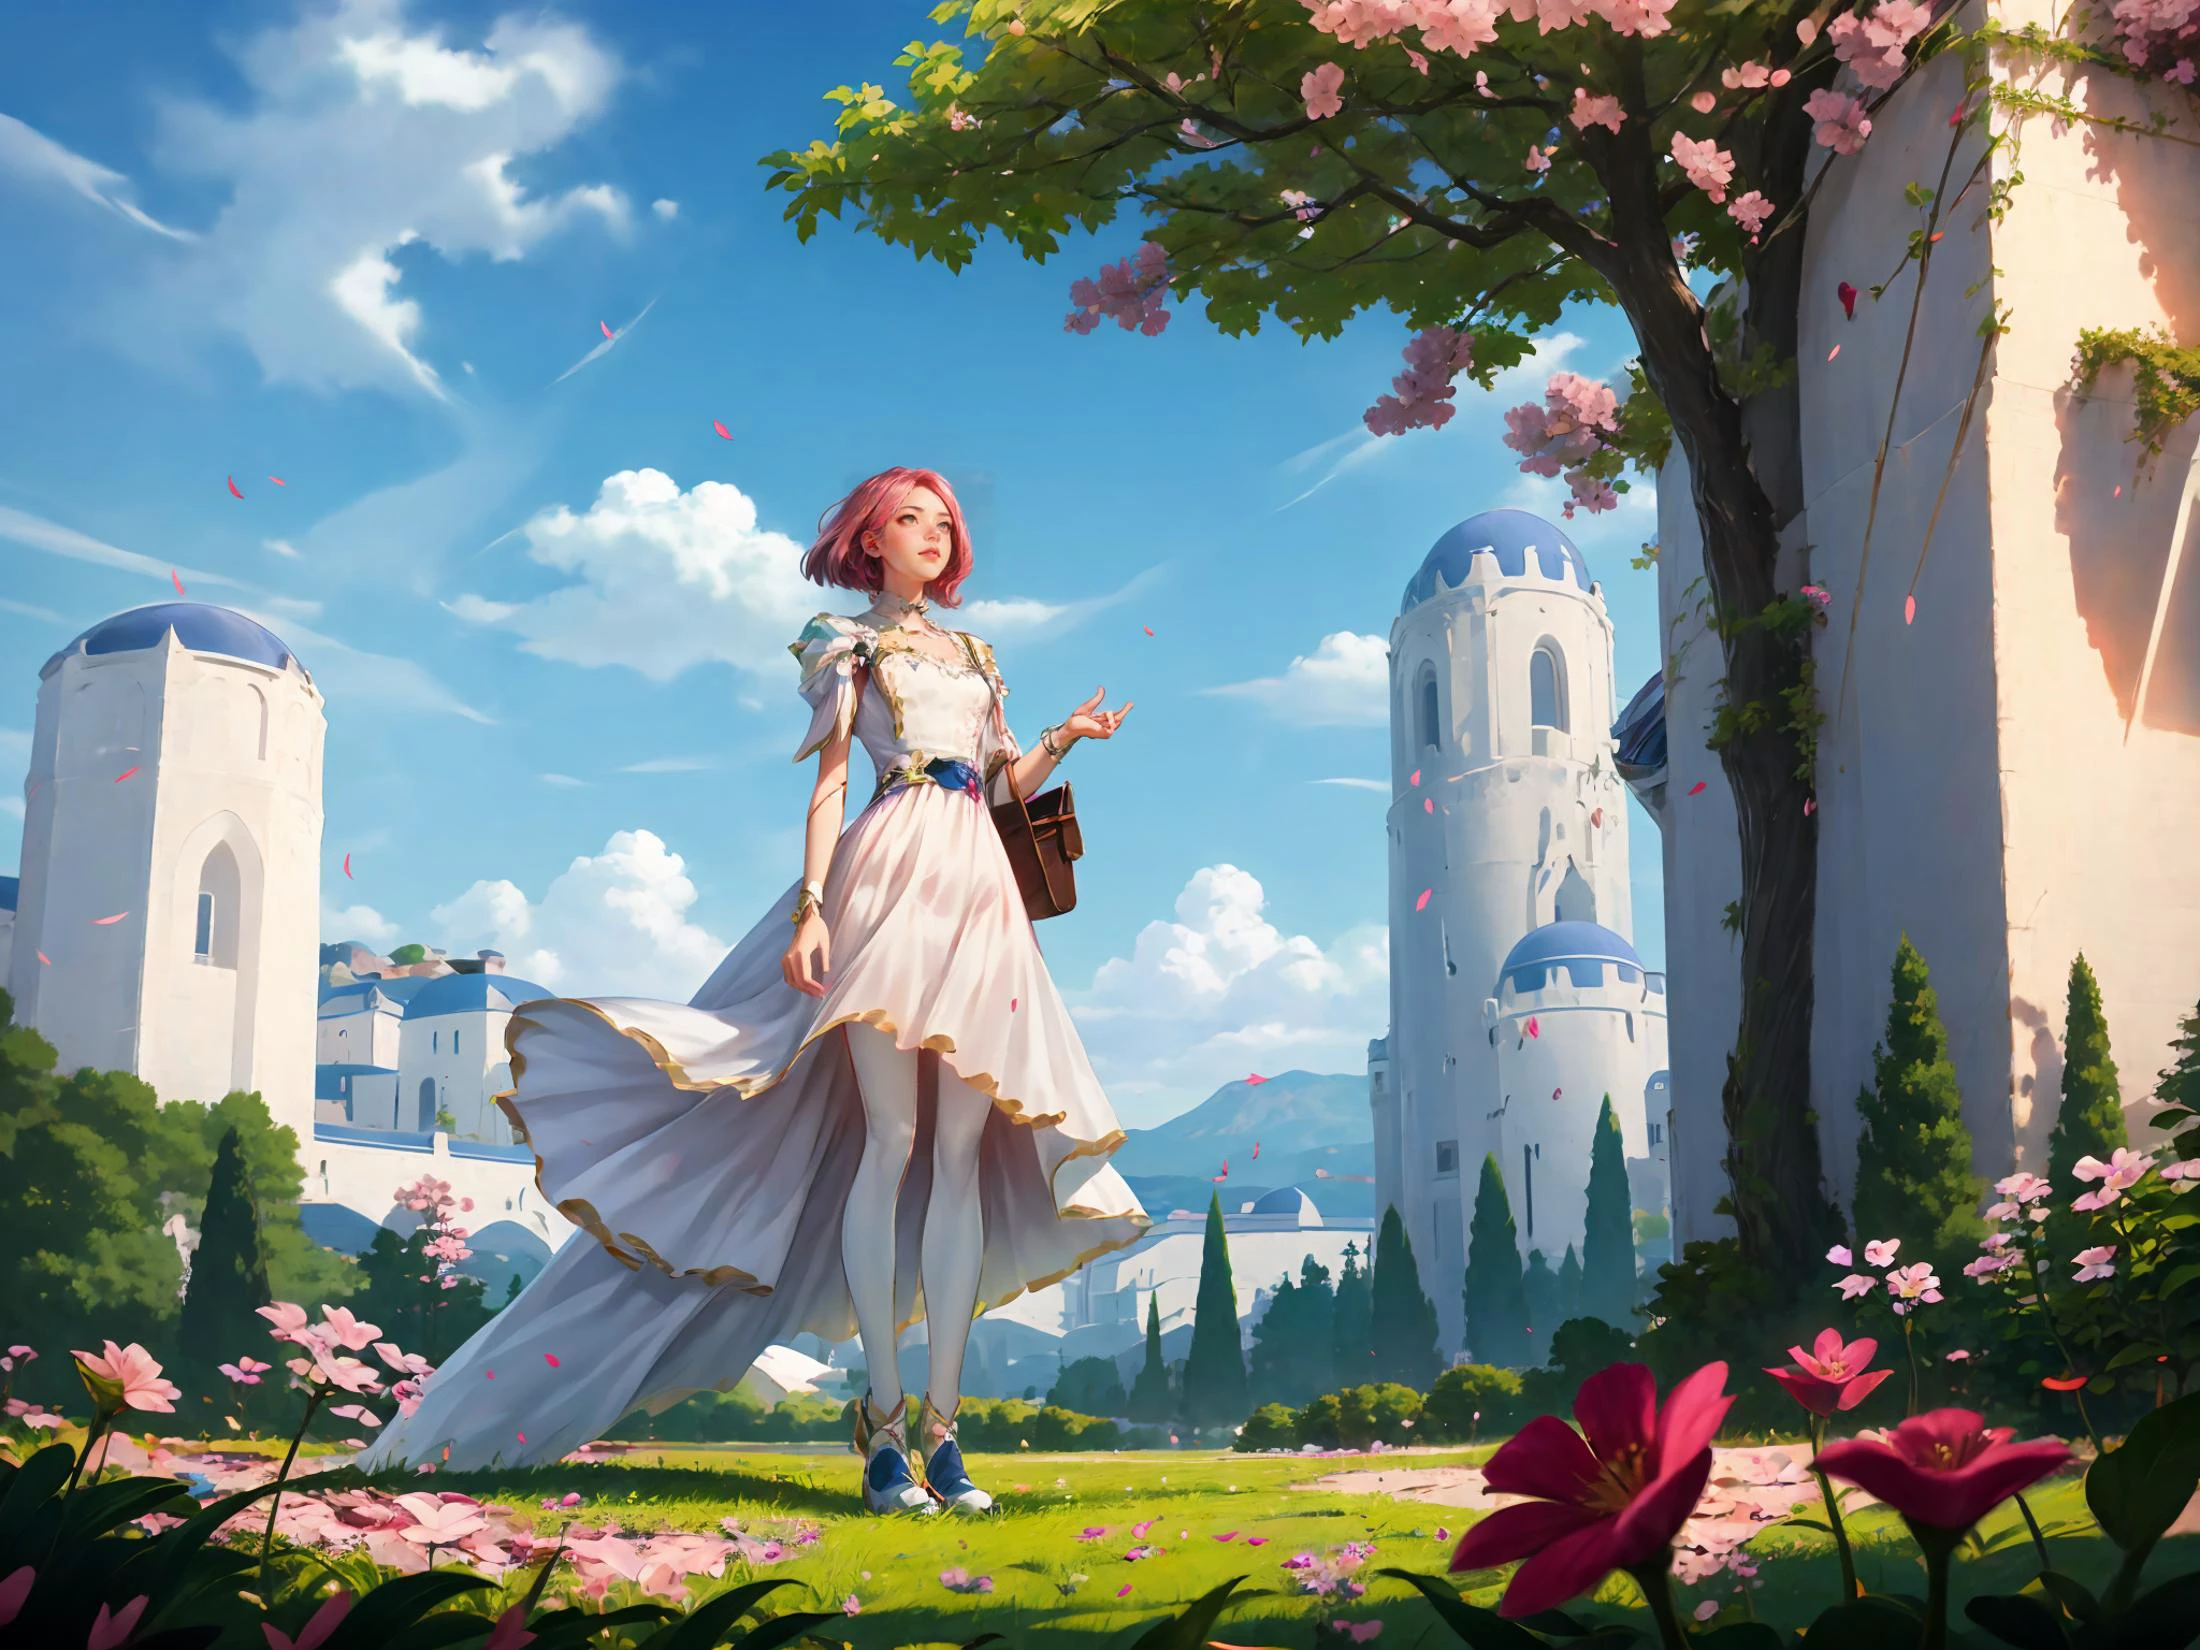 기르다,ㅋㅋㅋ,ㅋㅋ 스타일,게임 CG,하얀 드레스를 입은 여자가 분홍 꽃과 푸른 하늘이 있는 나무 앞에 서 있다,요시다 치즈코,rossdraws 글로벌 일루미네이션,상세한 그림,